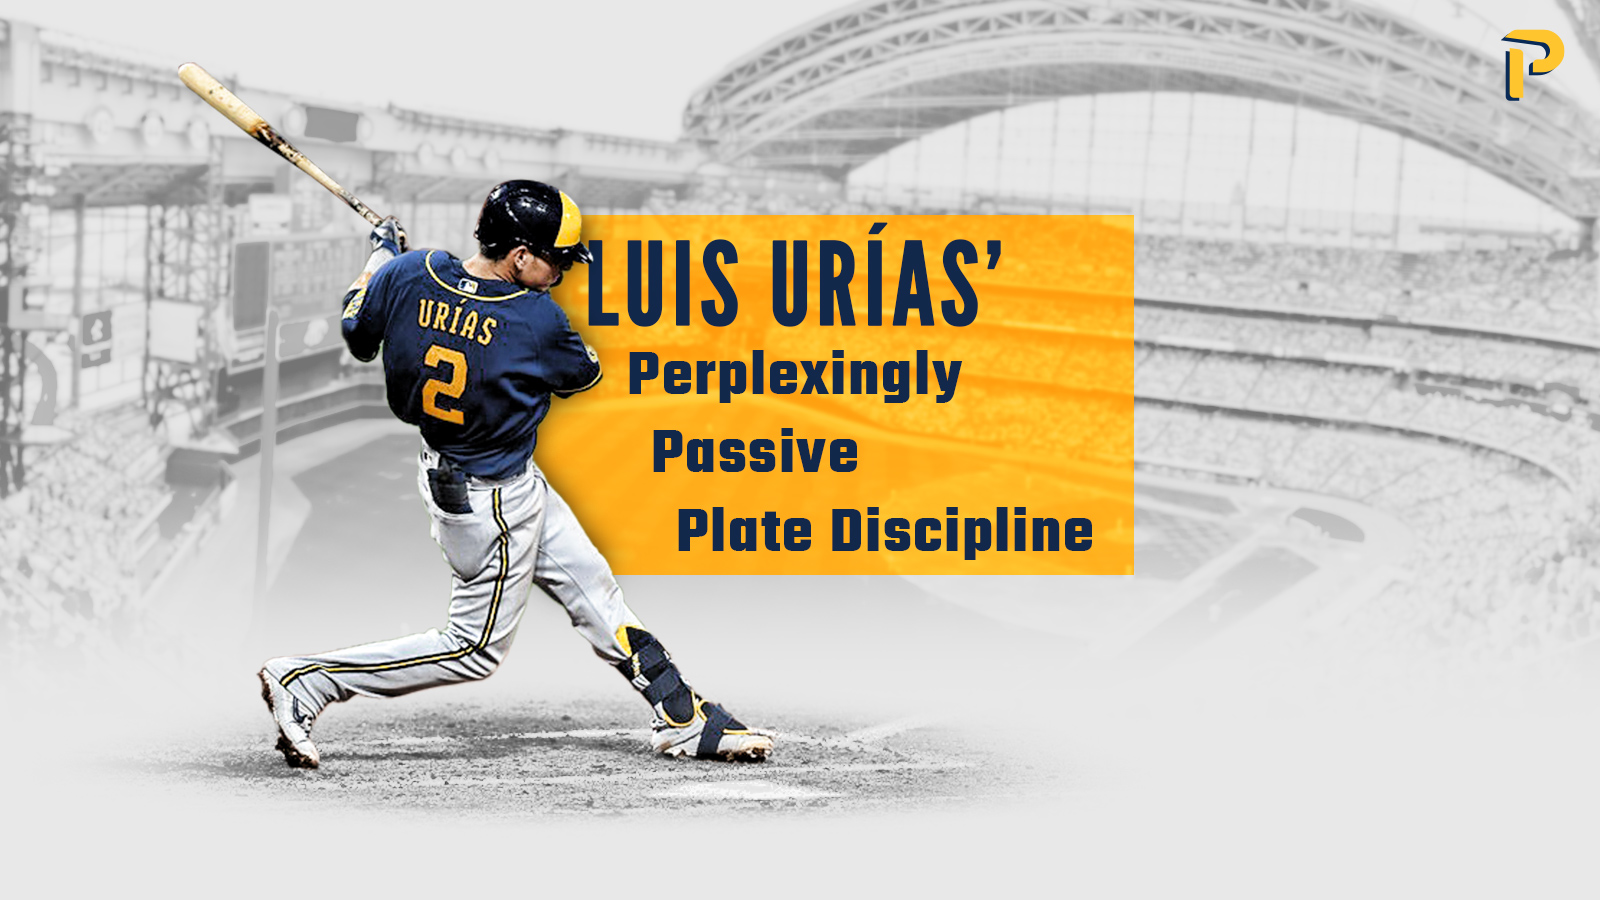 Luis Urias' Perplexingly Passive Plate Discipline